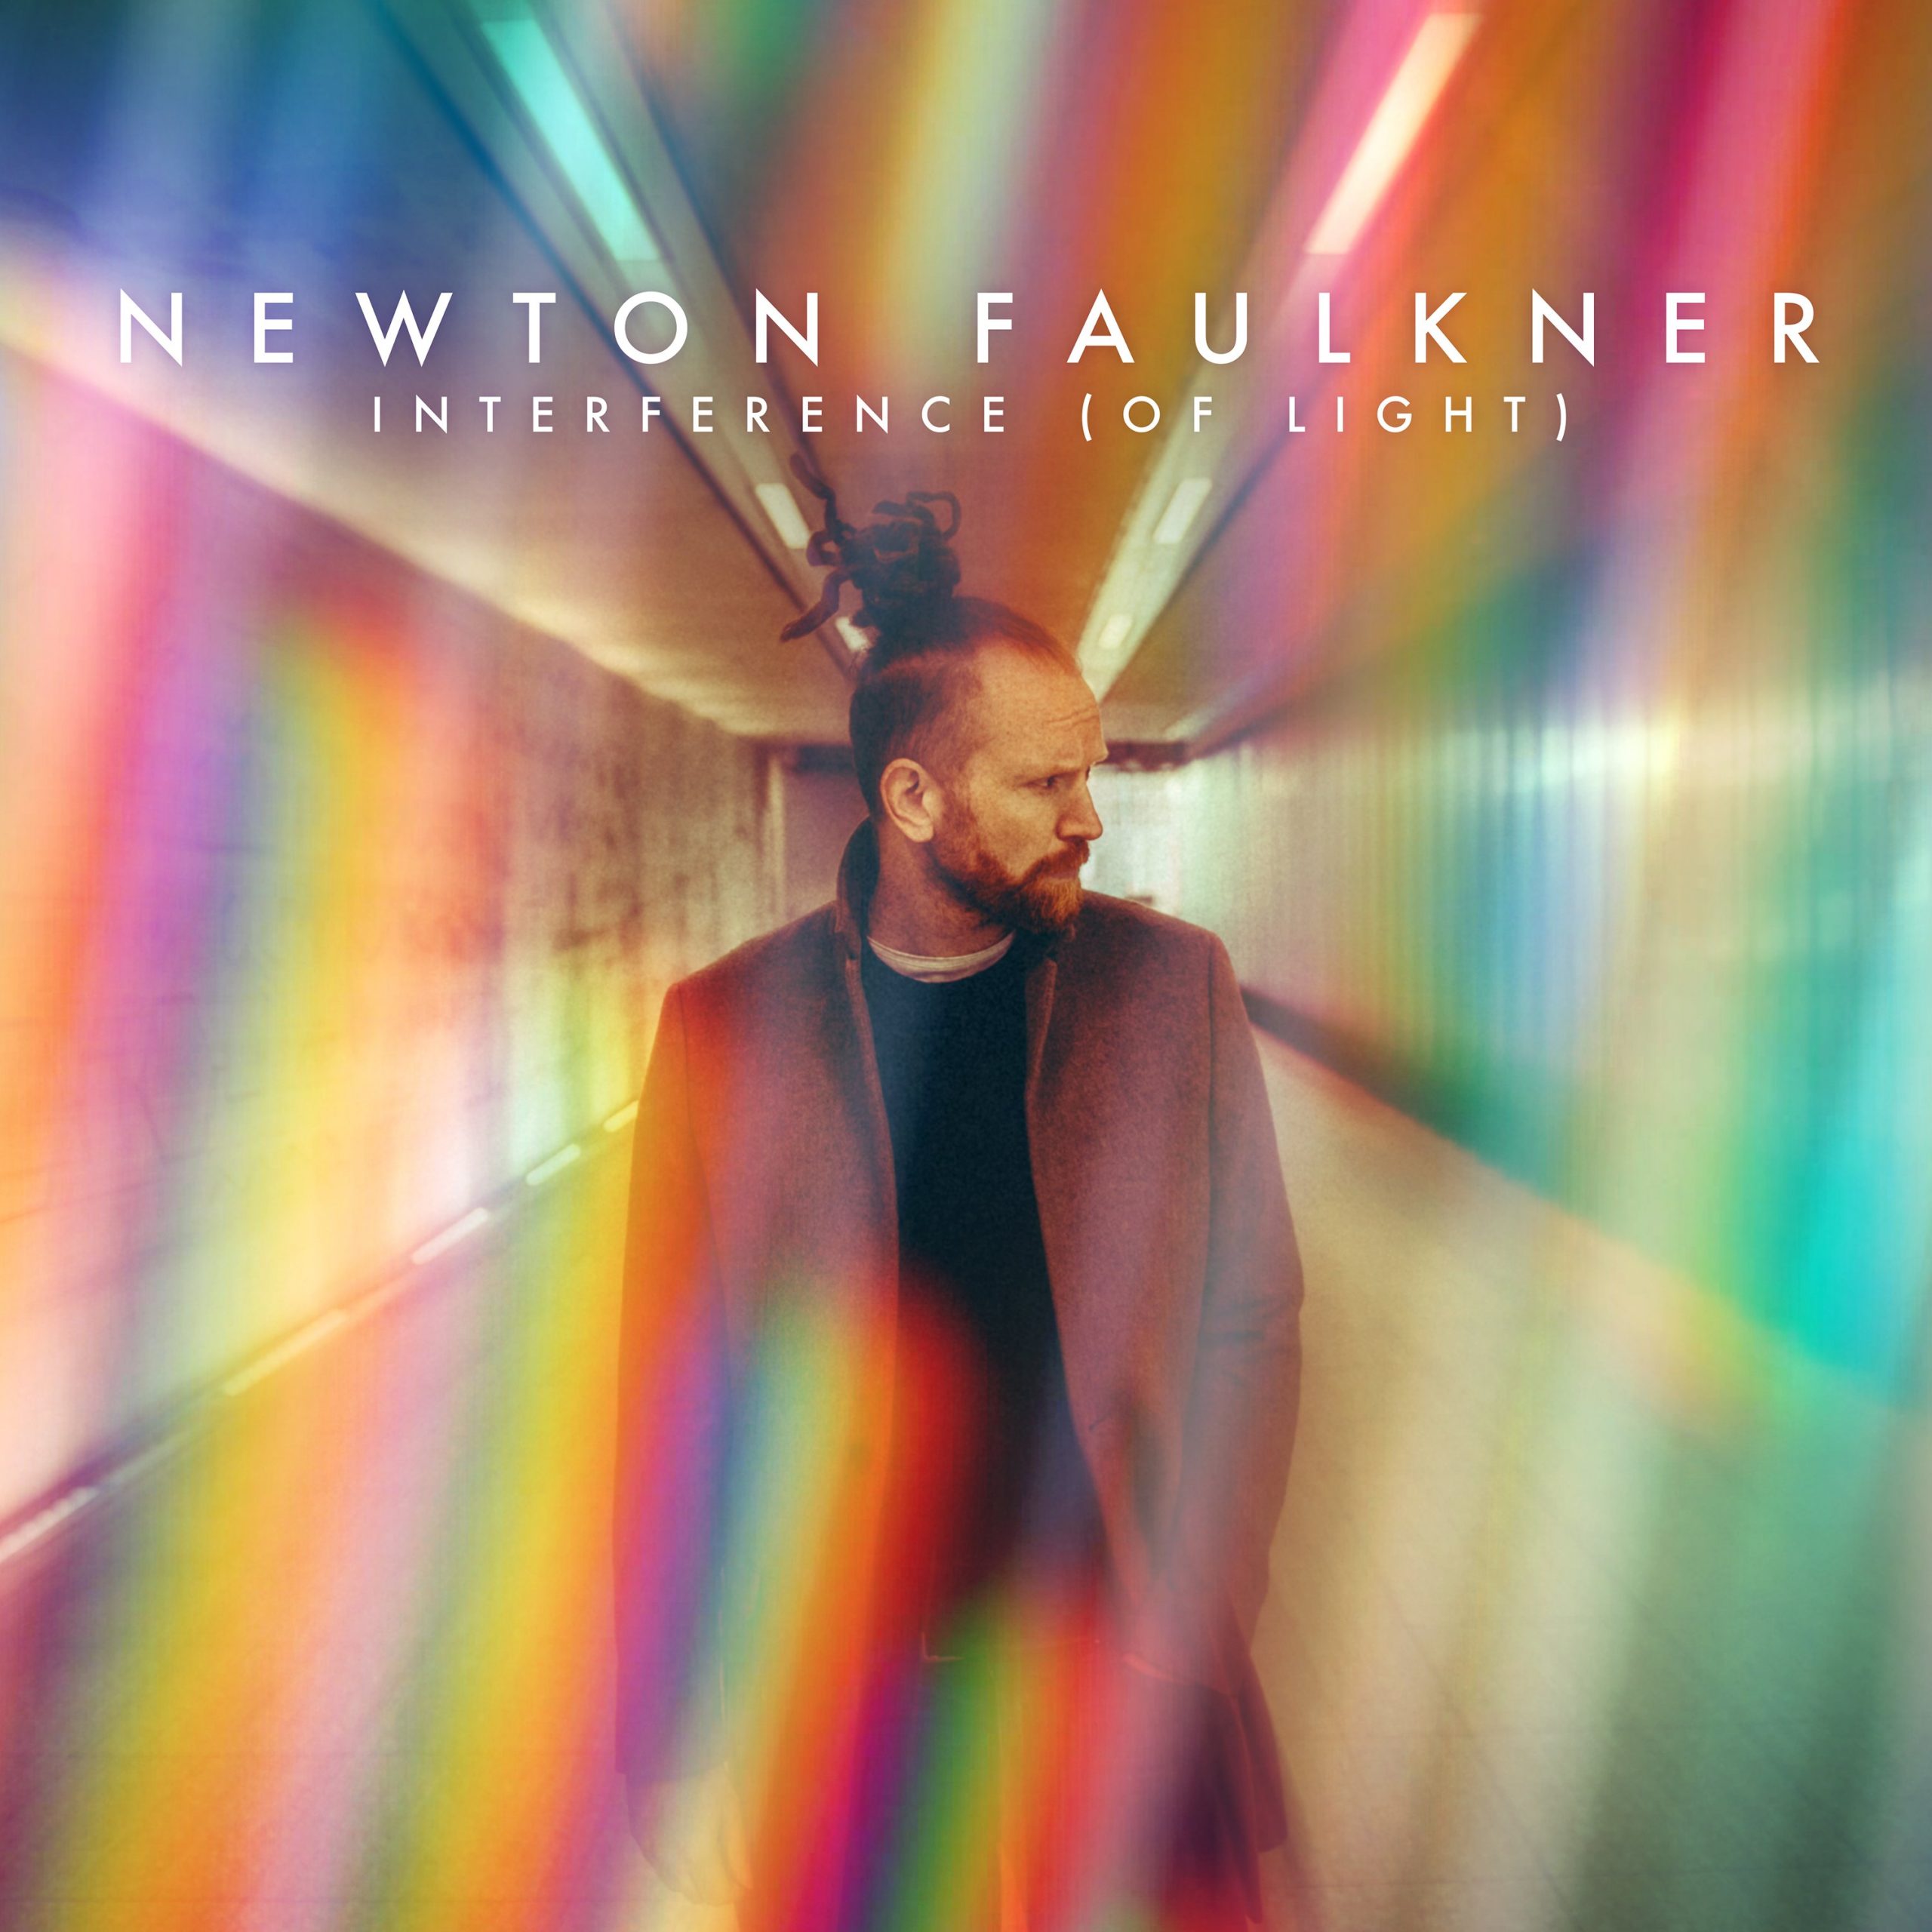 newton faulkner tour review